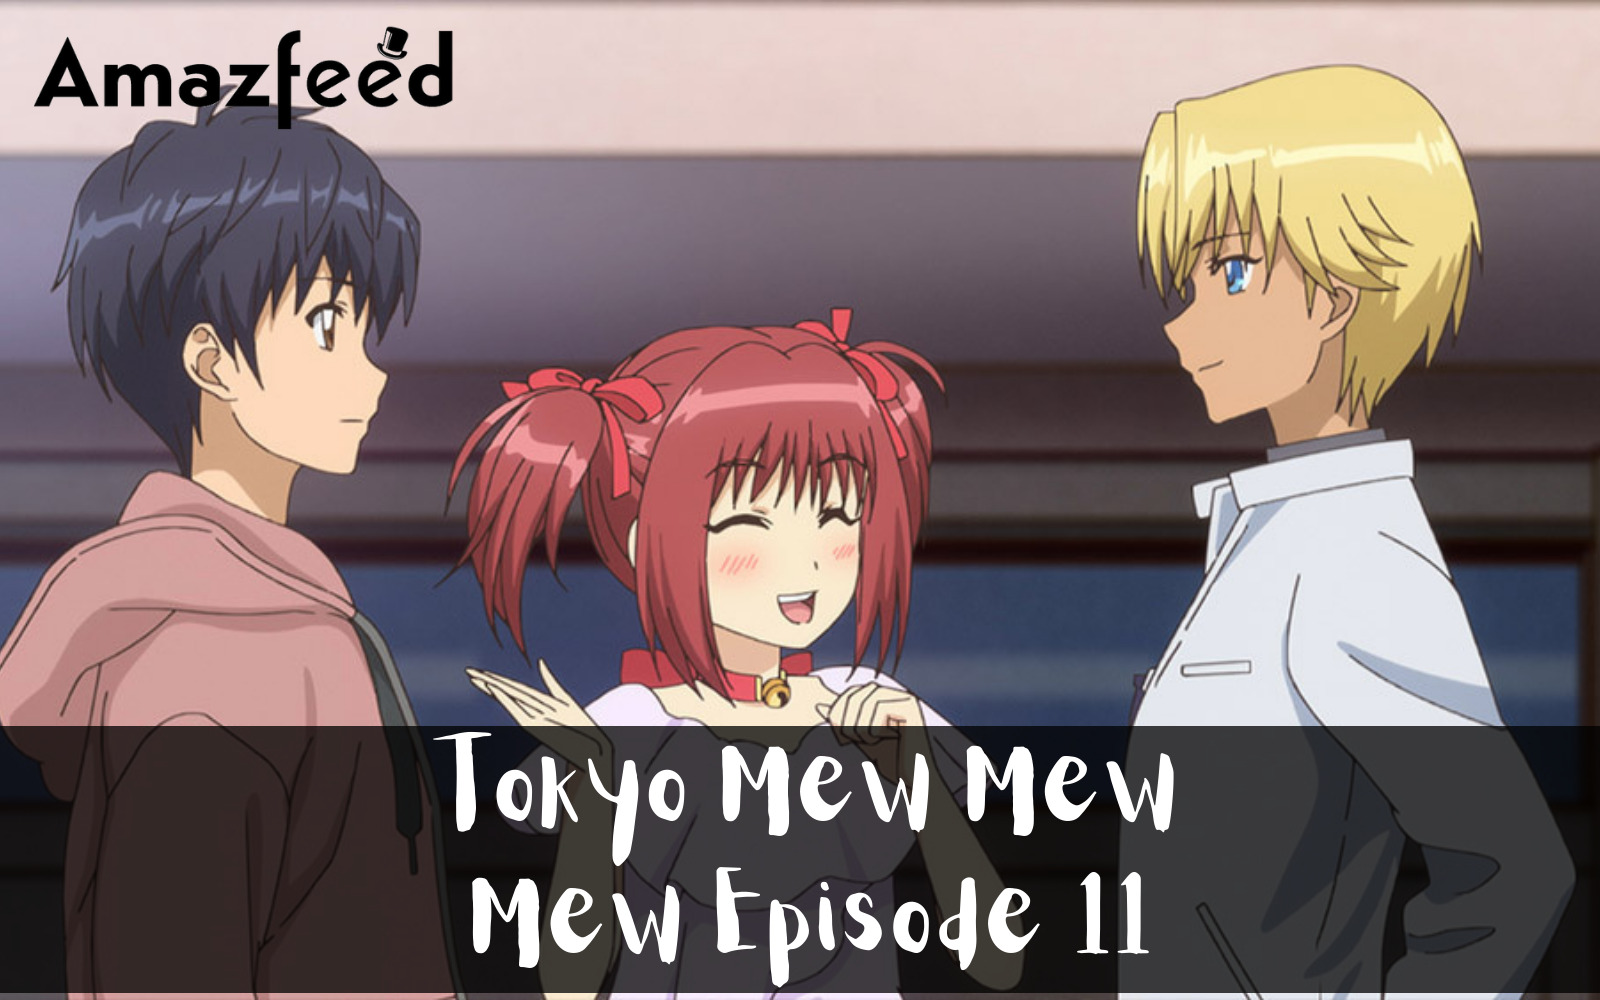 Tokyo Mew Mew Mew Episode 11 spoiler